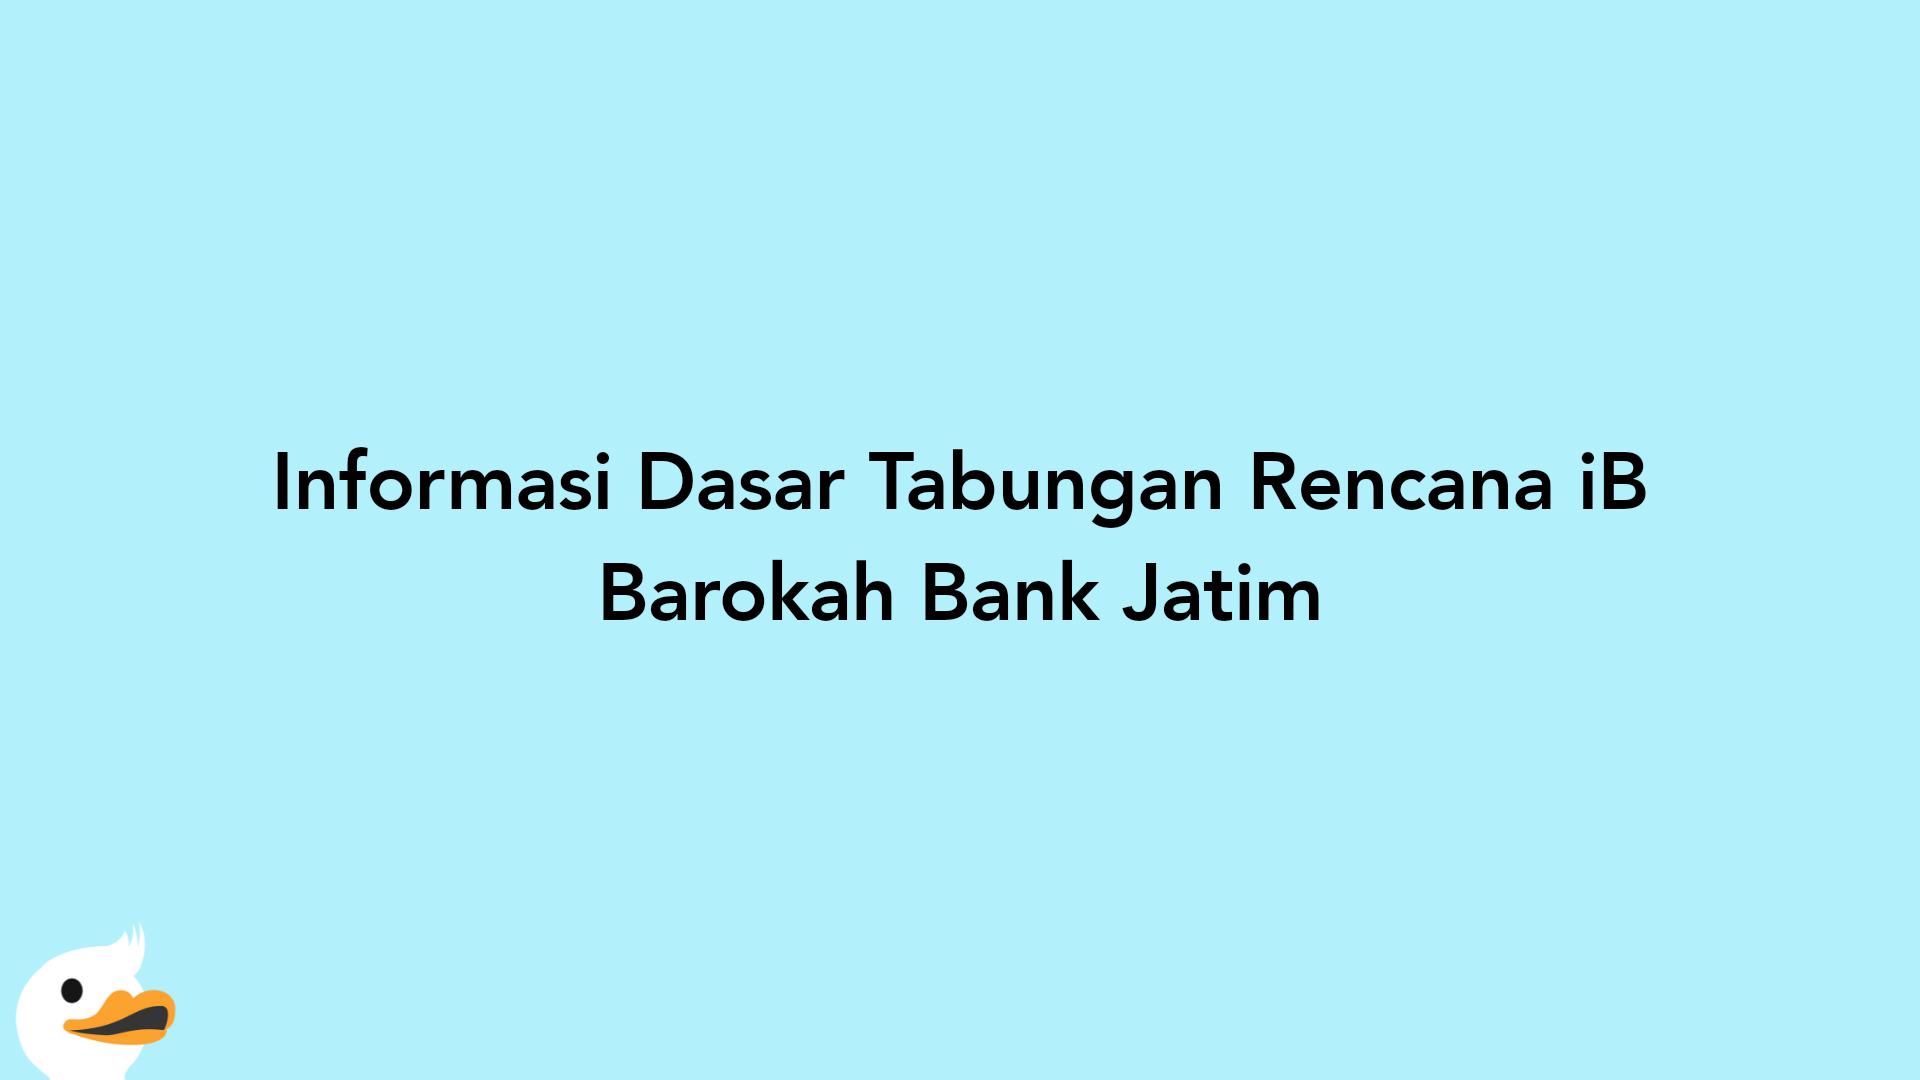 Informasi Dasar Tabungan Rencana iB Barokah Bank Jatim